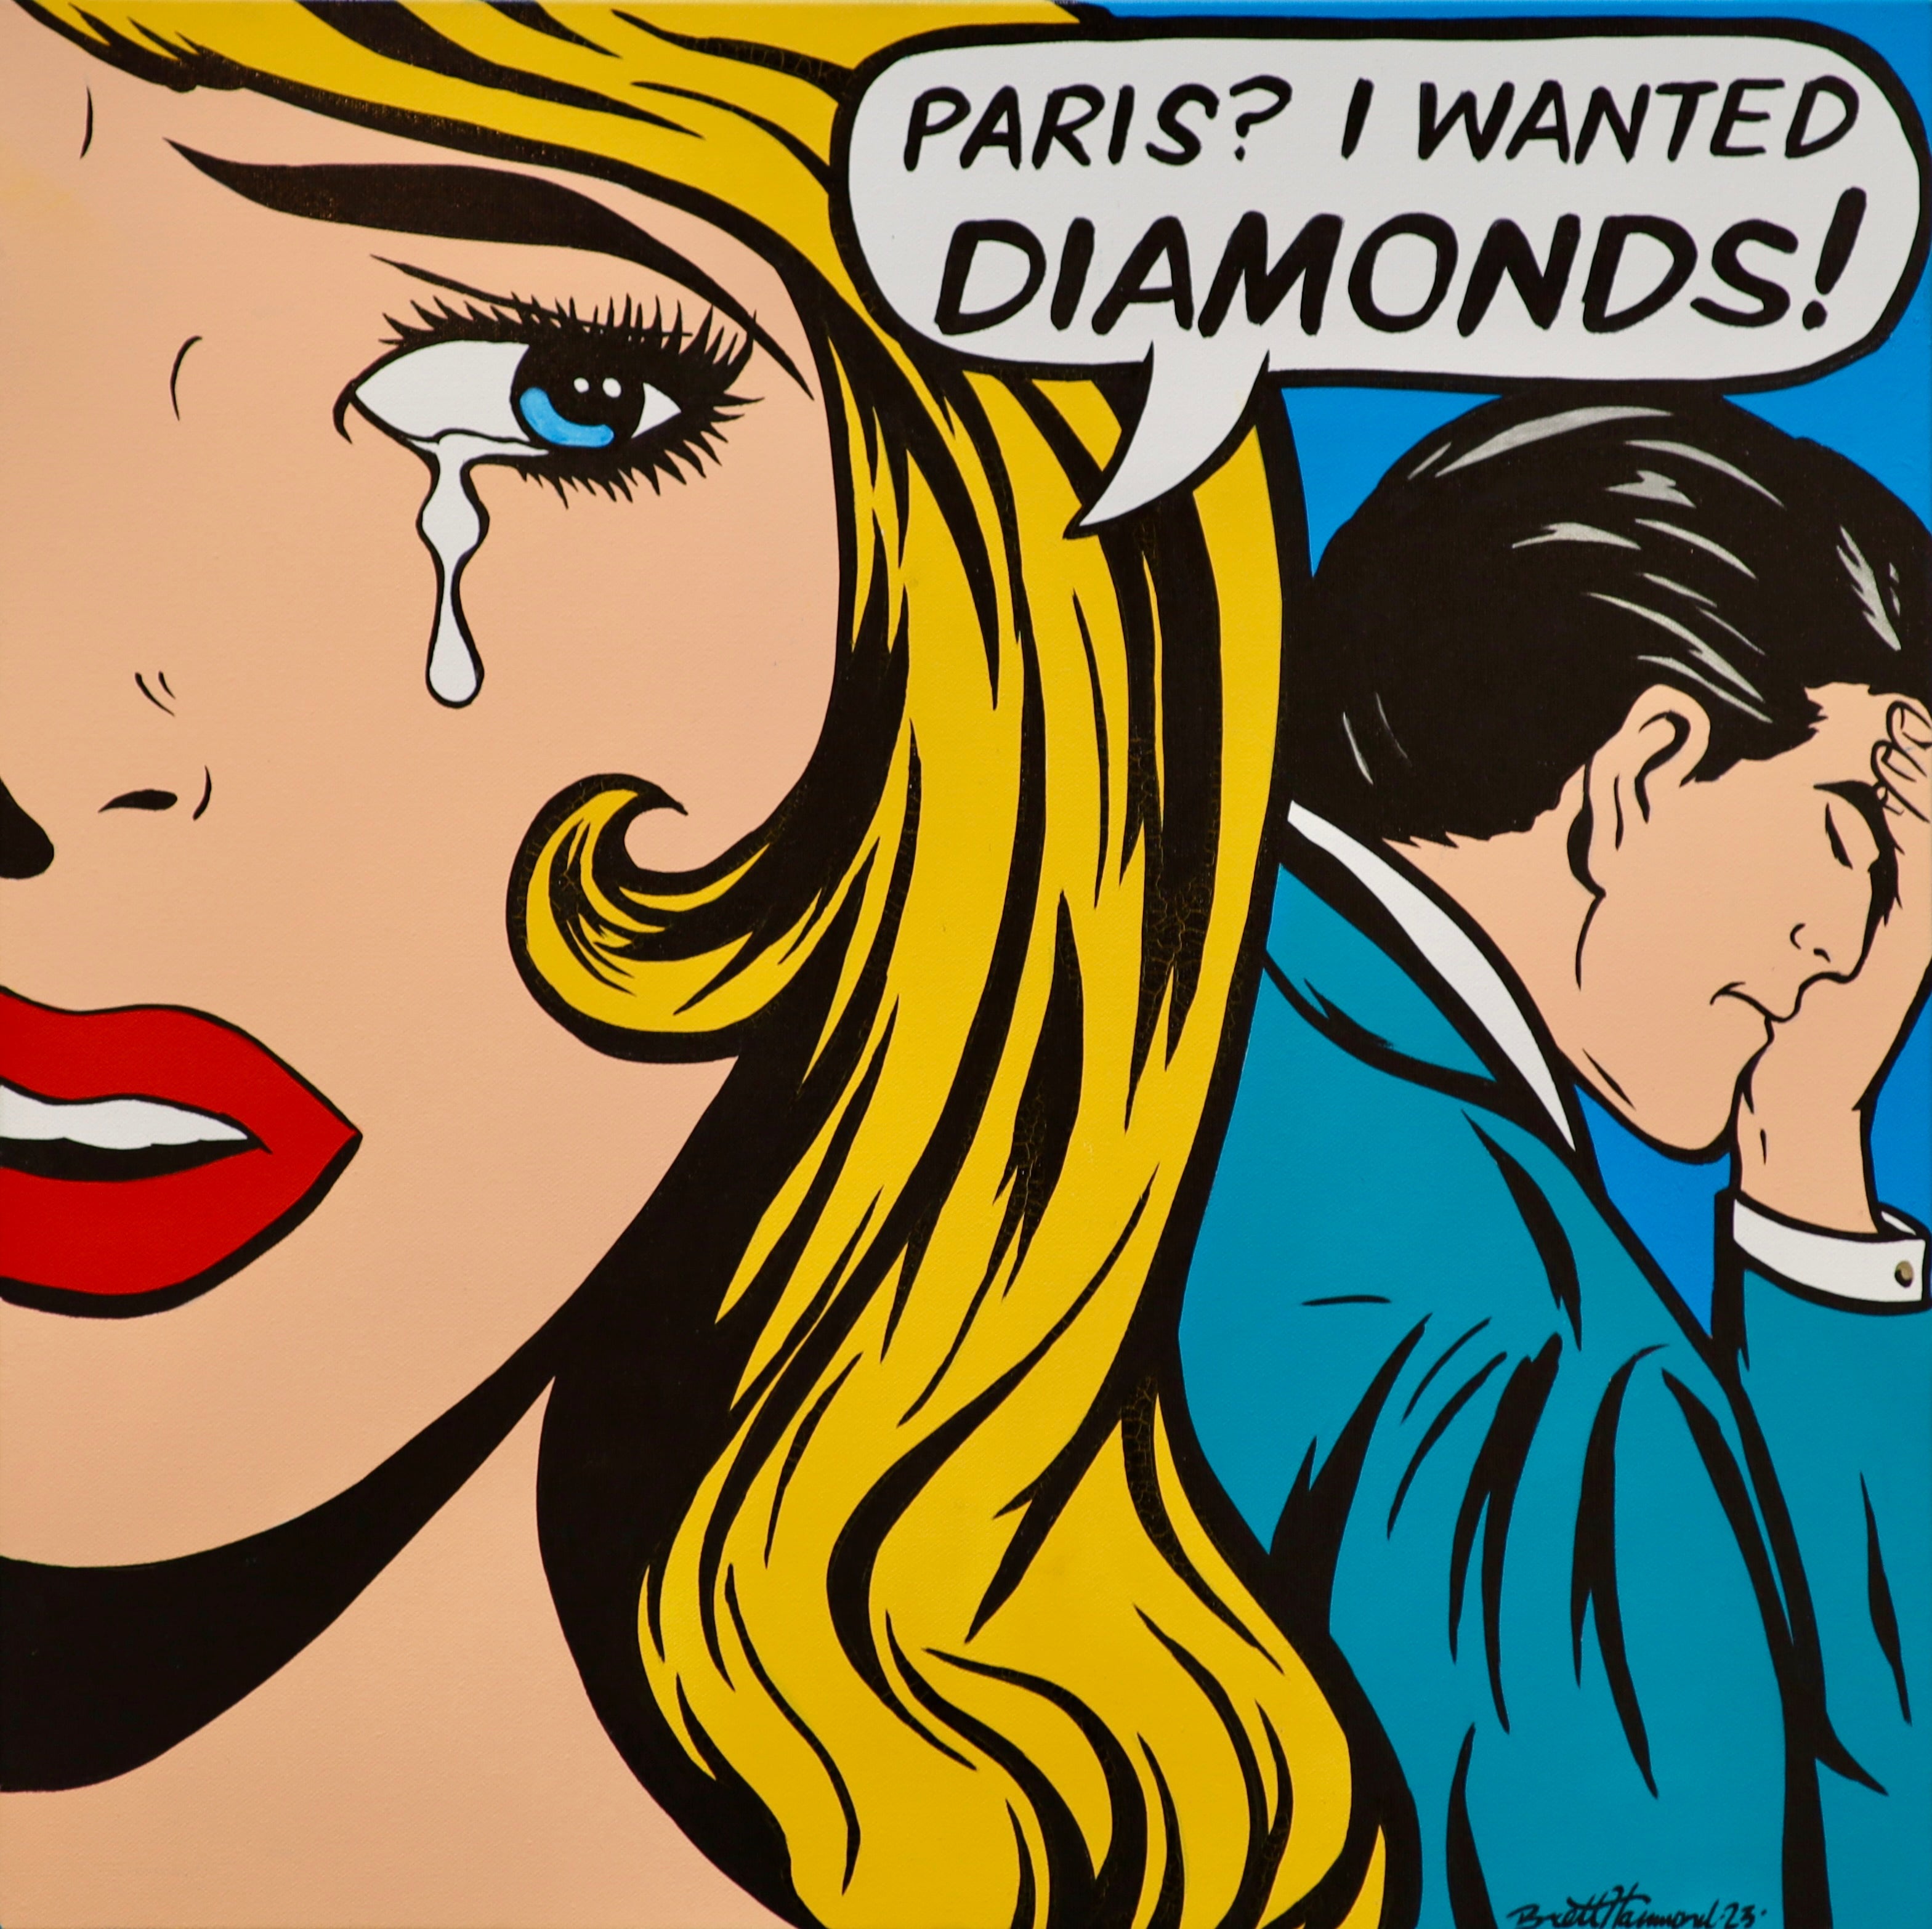 Paris? I wanted Diamonds!